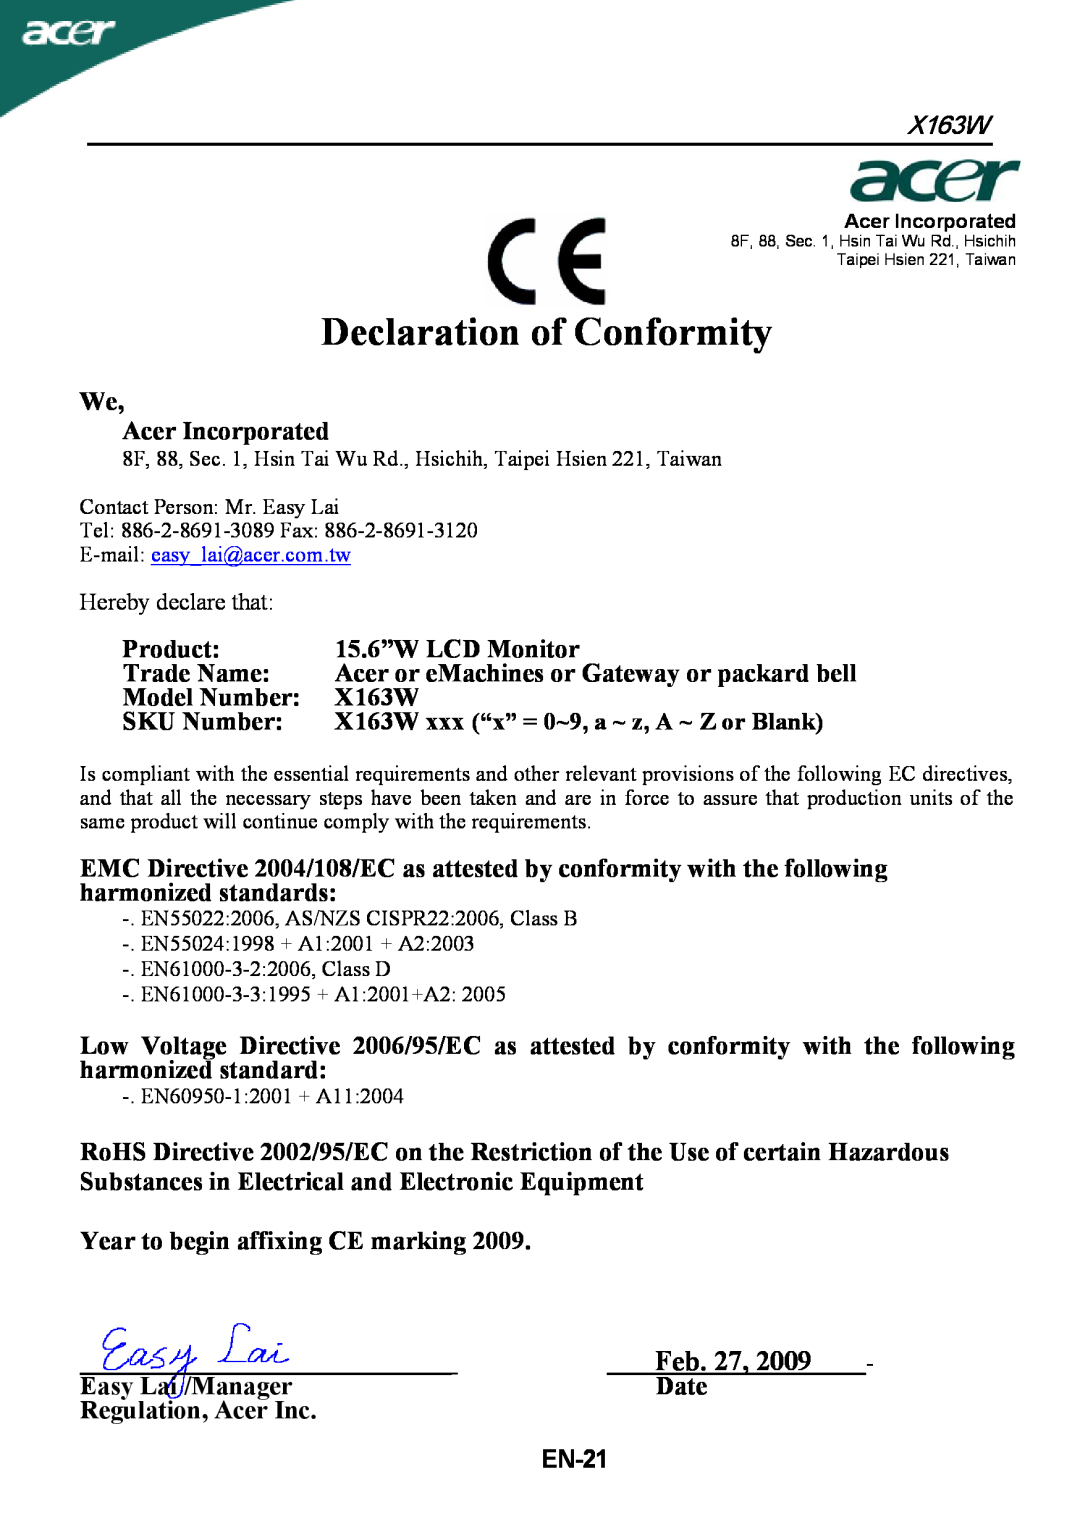 Acer X163W manual Declaration of Conformity, Feb. 27, BGEN-21 